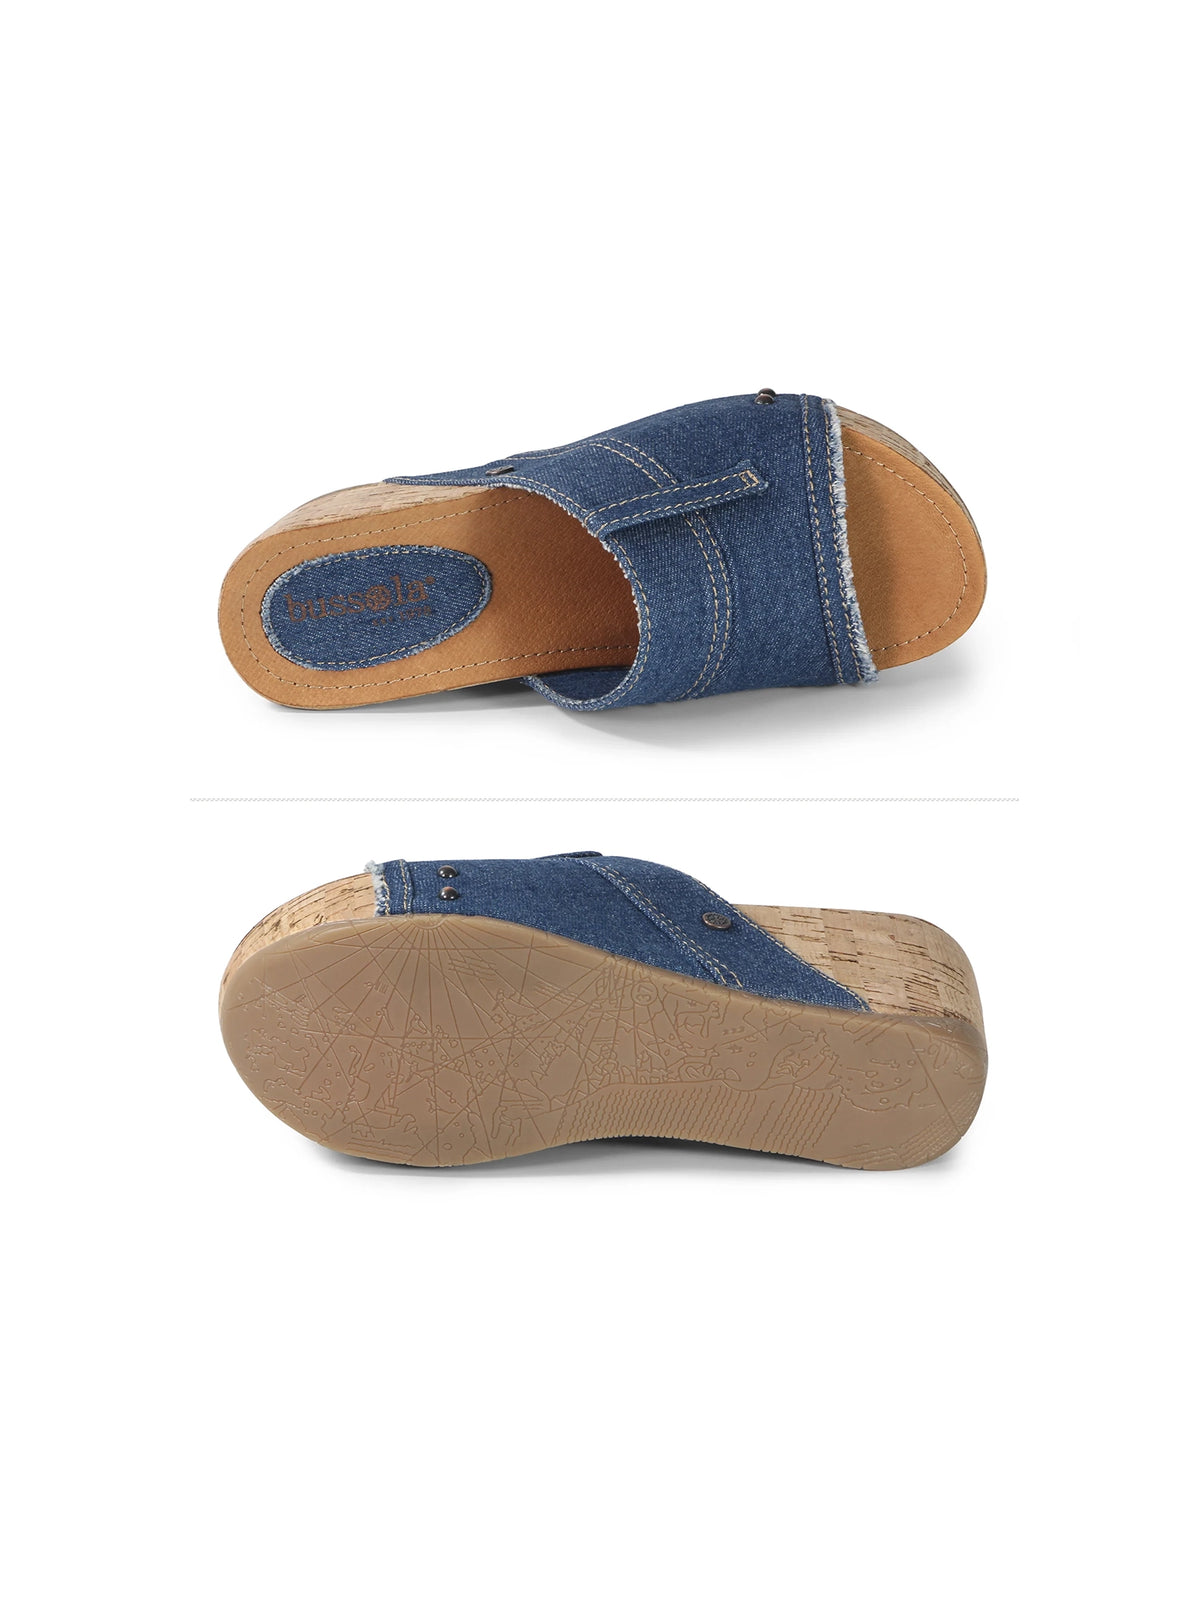 bussola formentera felicia platform wedge slide sandals in blue denim